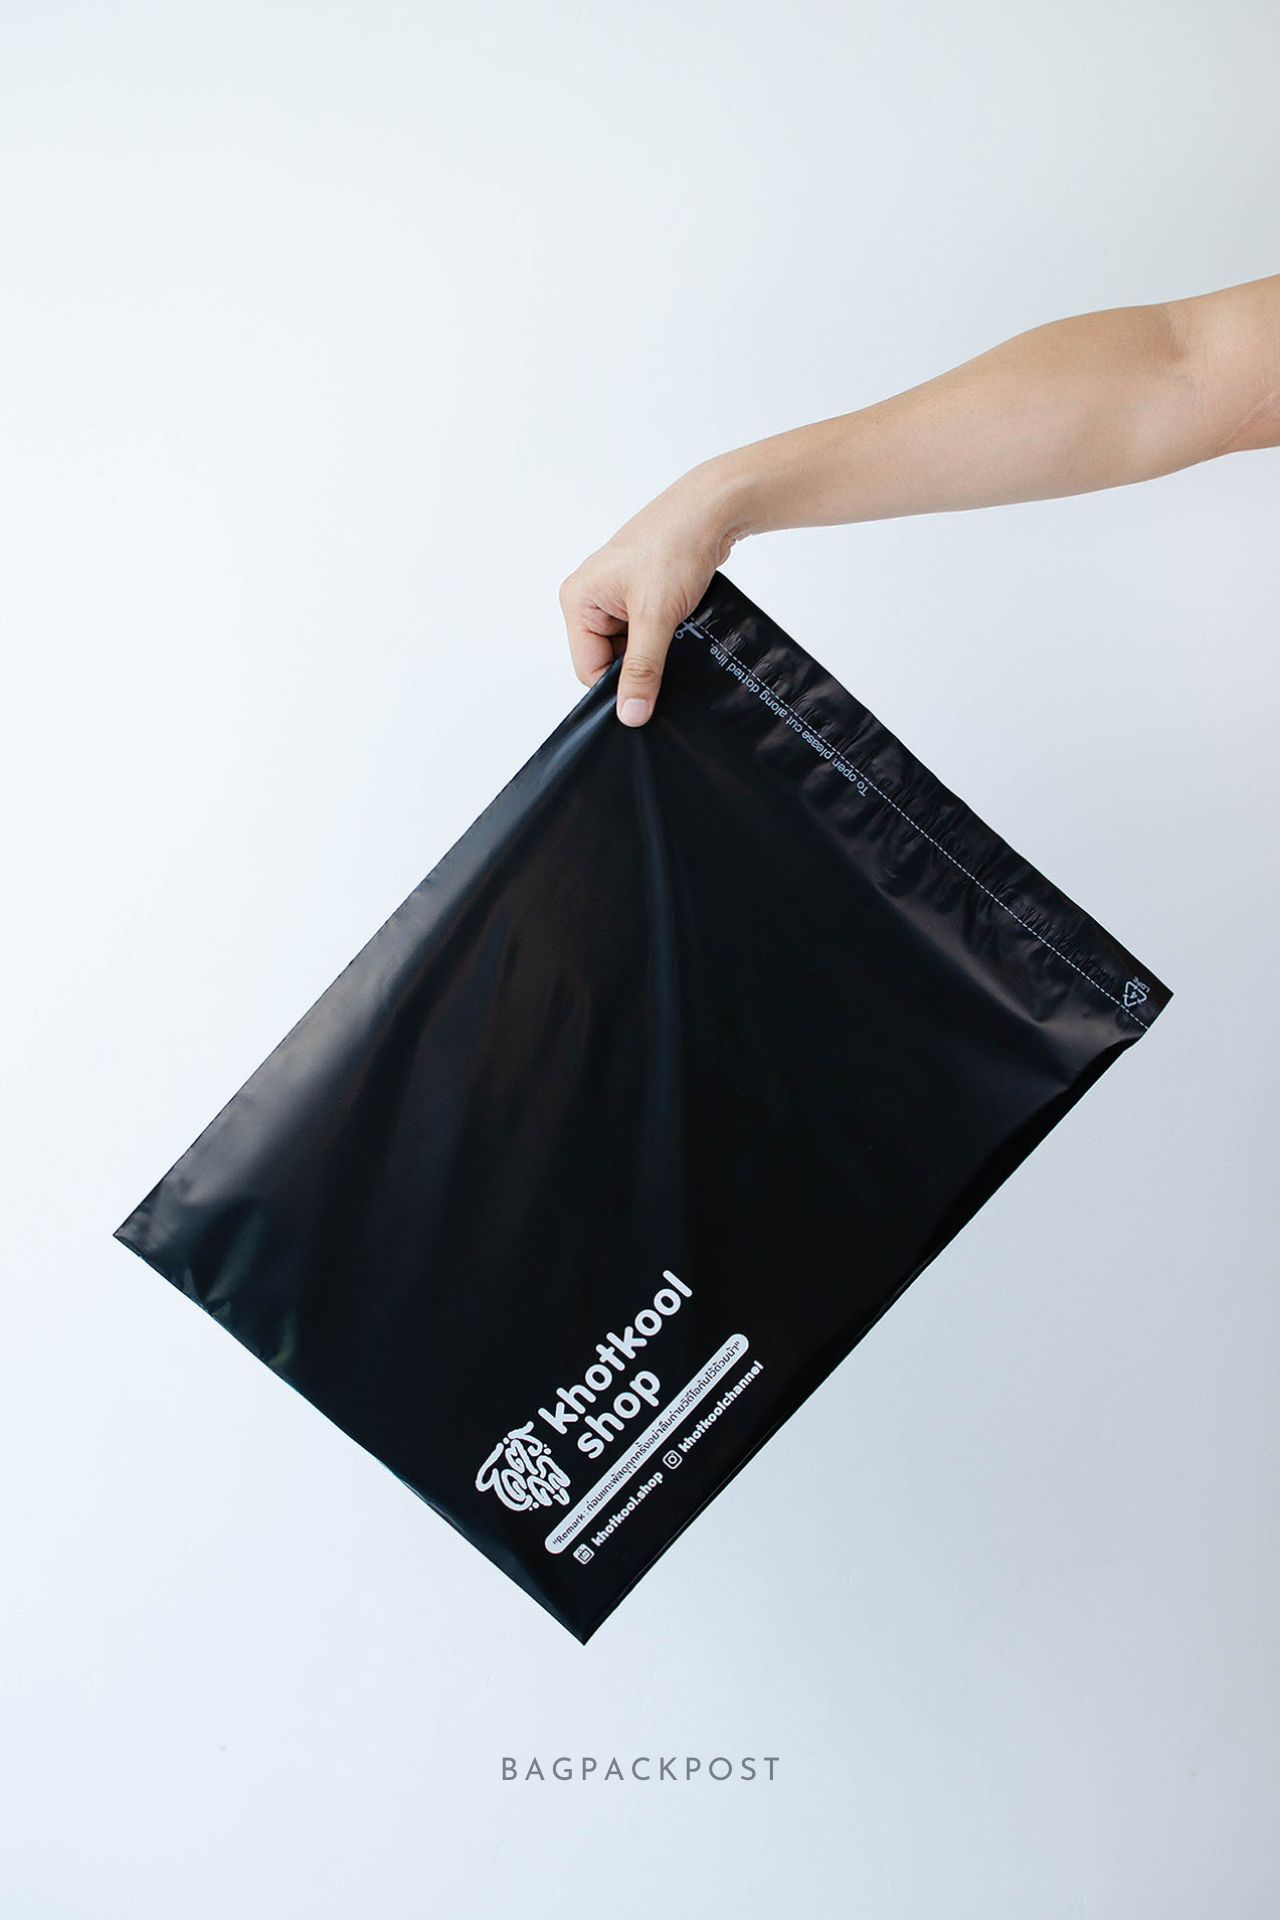 ผลิตถุงไปรษณีย์ ซองไปรษณีย์พิมพ์ลาย โคตรคูล ซองไปรษณีย์สีดำ ถุงไปรษณีย์พิมพ์ลาย 1 BagPackPost